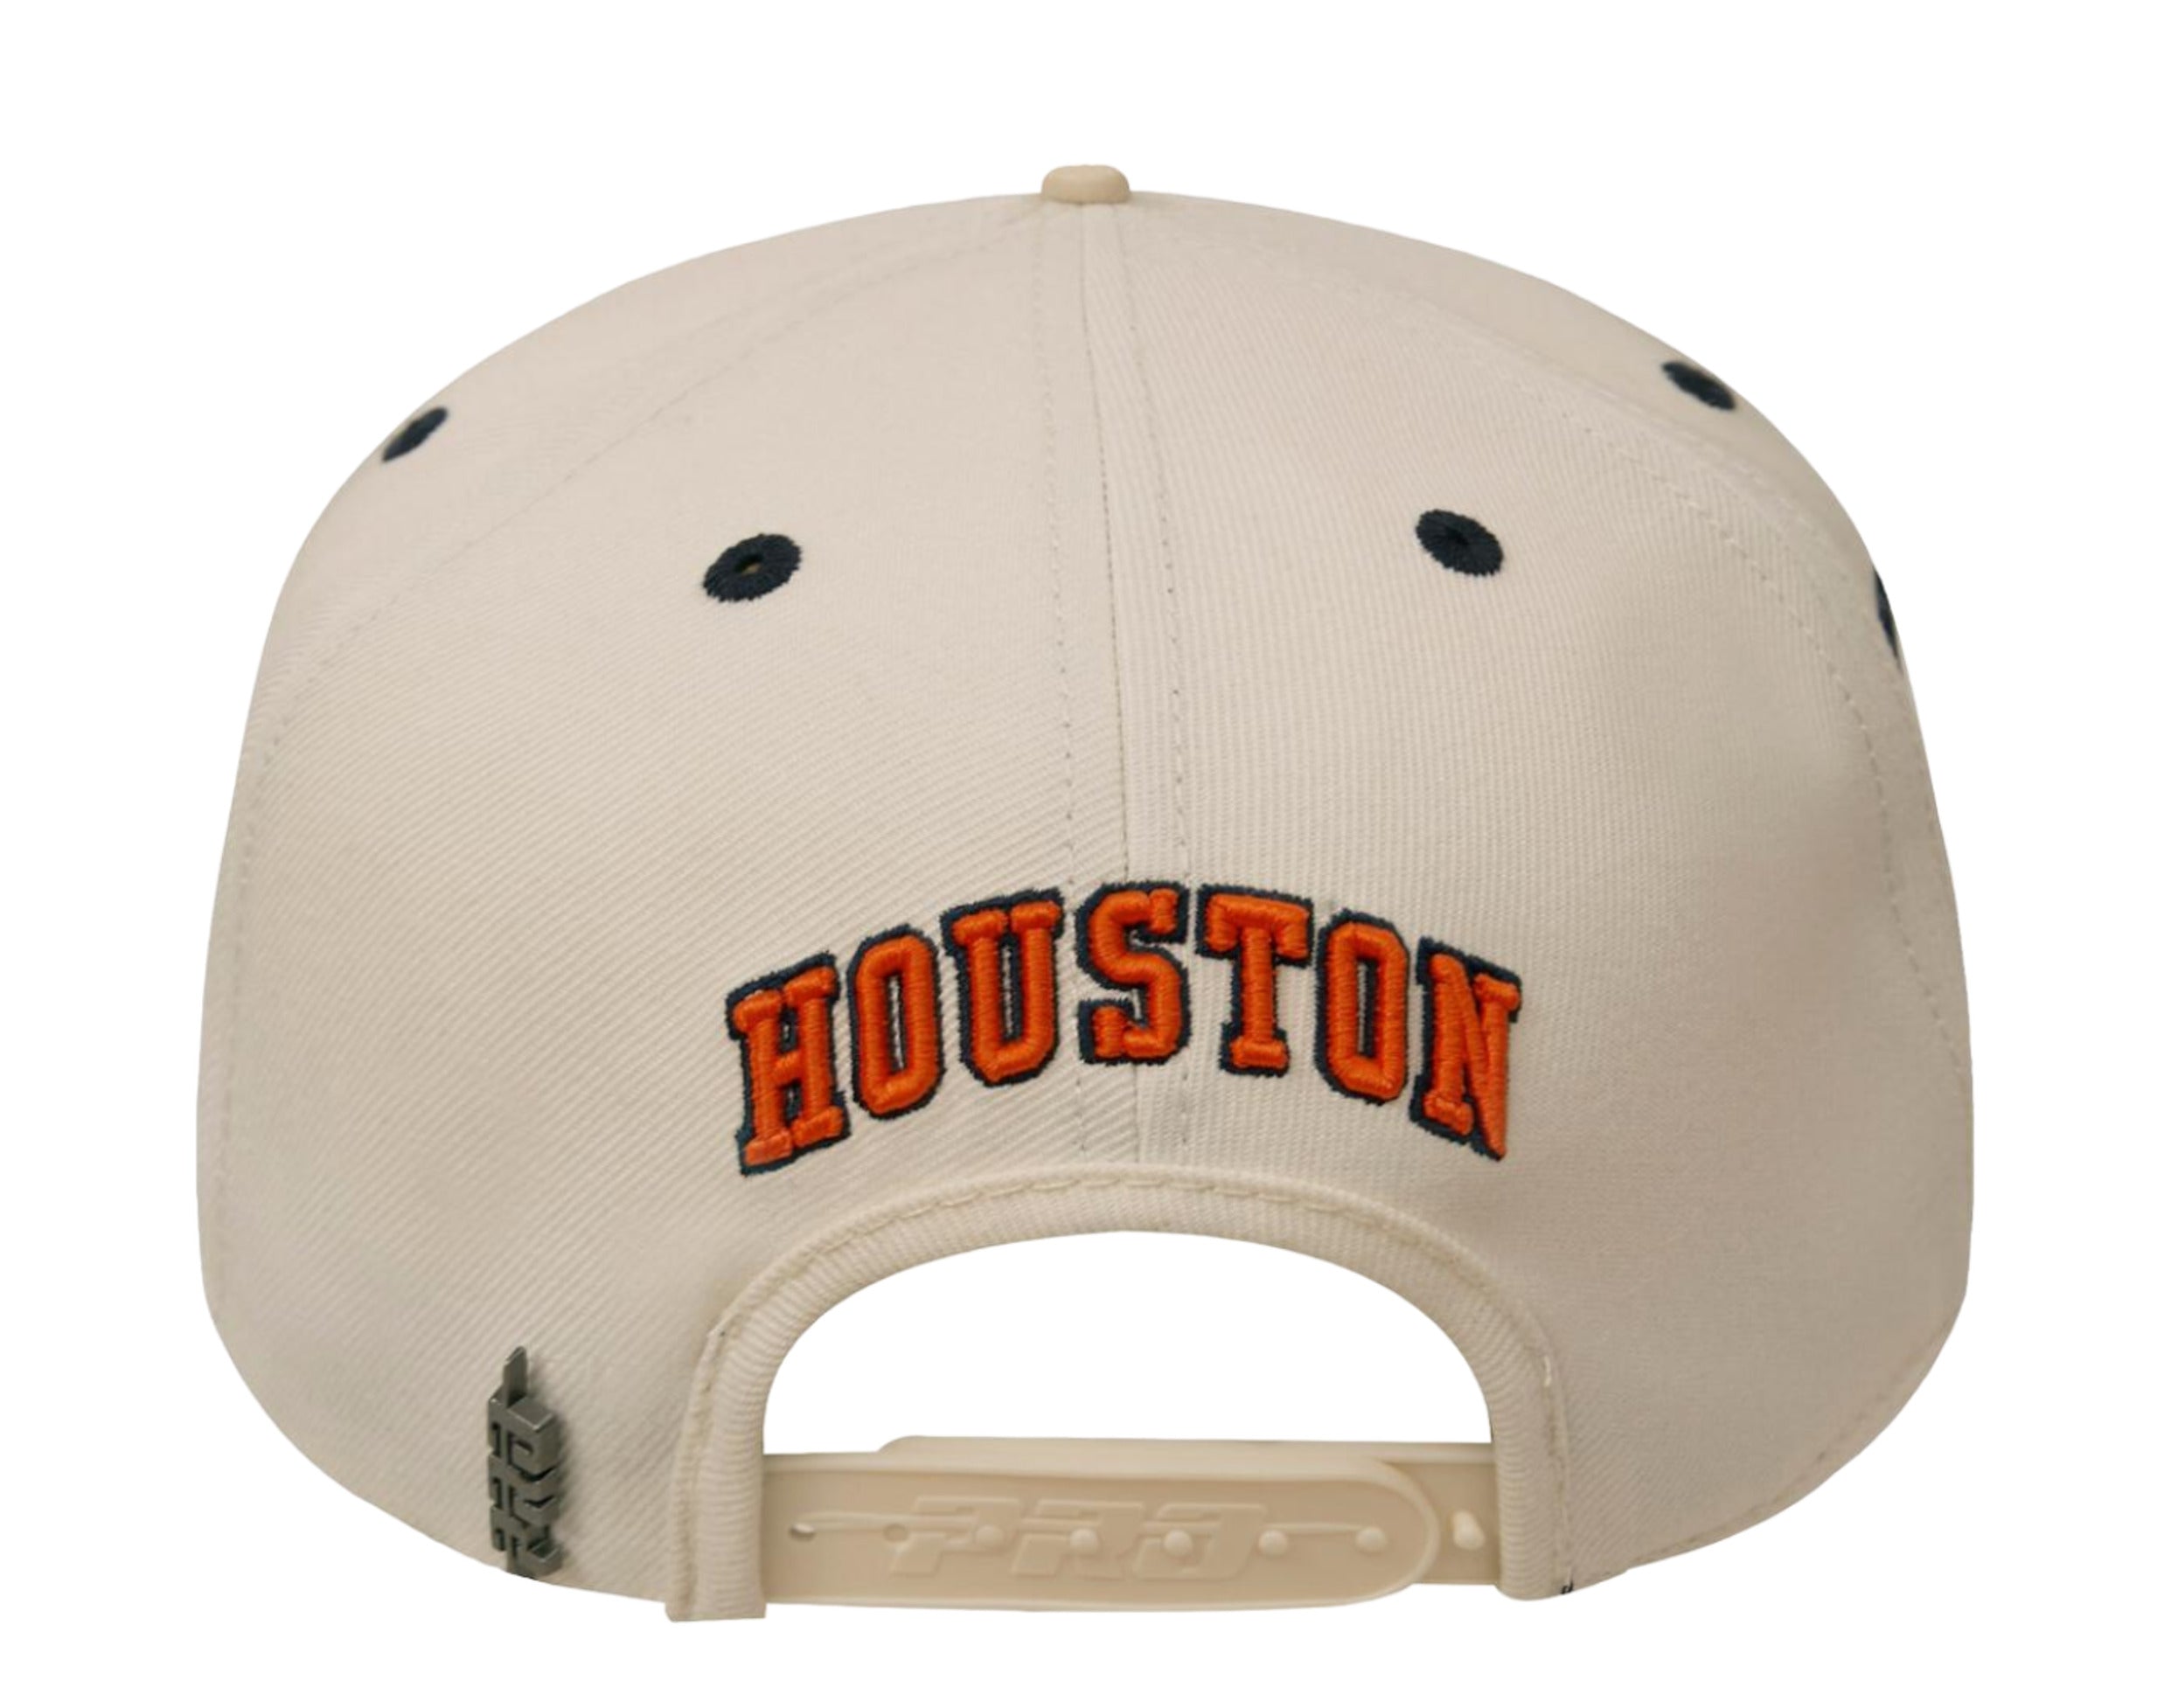 Houston Astros Hats, Astros Gear, Houston Astros Pro Shop, Apparel